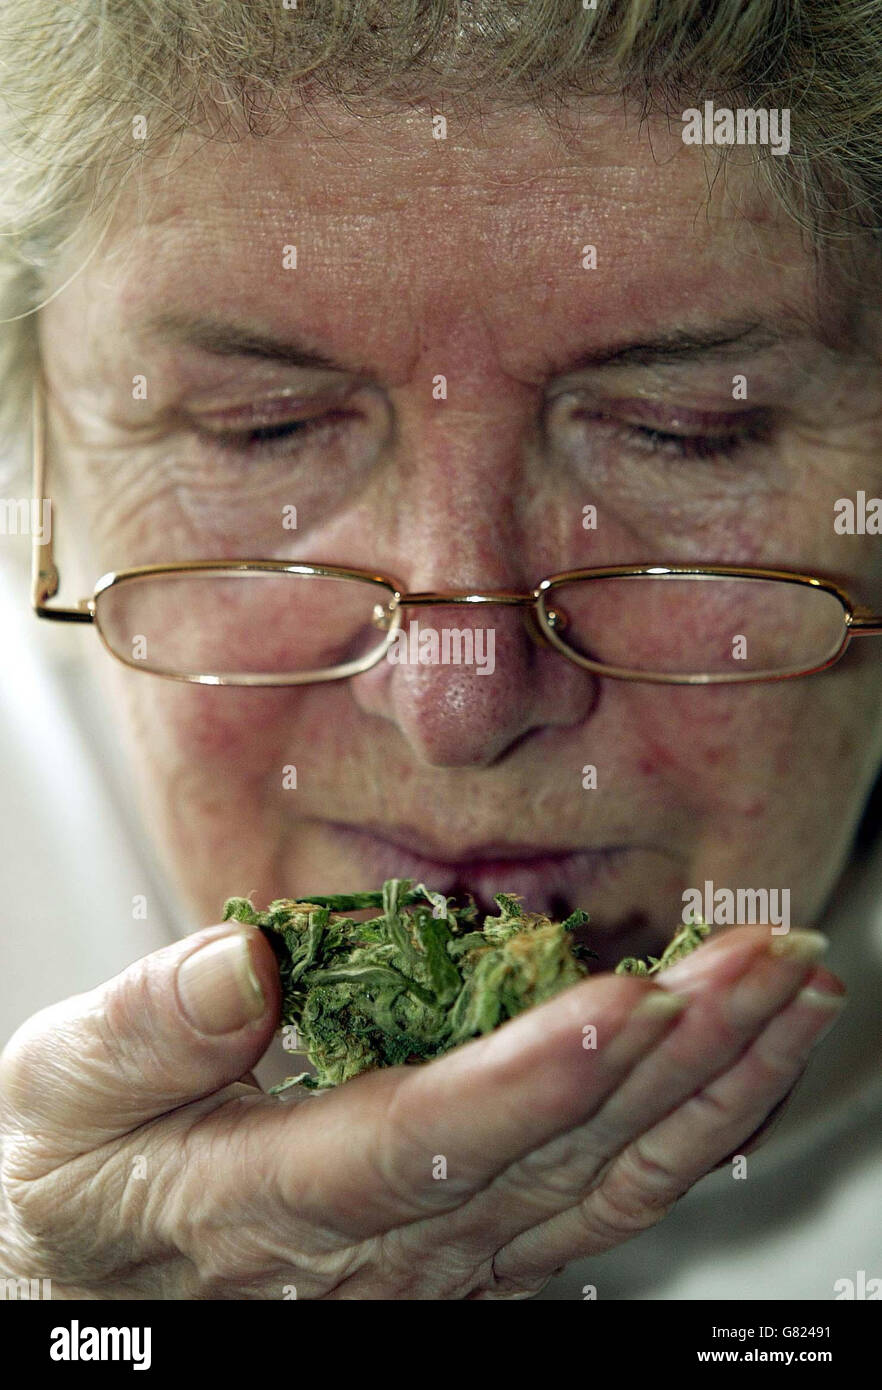 Patricia Tabram, 66, riecht Cannabis in ihrem Zuhause in East Lea, Humshaugh, in der Nähe von Hexham. Sie wird vor dem Newcastle Crown Court verurteilt, nachdem sie eine Anklage wegen des Besitzes eines Medikaments der Klasse C mit Absicht zur Lieferung zugelassen hat. Seit ihrer Überzeugung hat Frau Tabram ihren neu entdeckten Berühmtheitsstatus bewundert und plant, ein Buch mit dem Titel Oma isst Cannabis zu veröffentlichen. Stockfoto